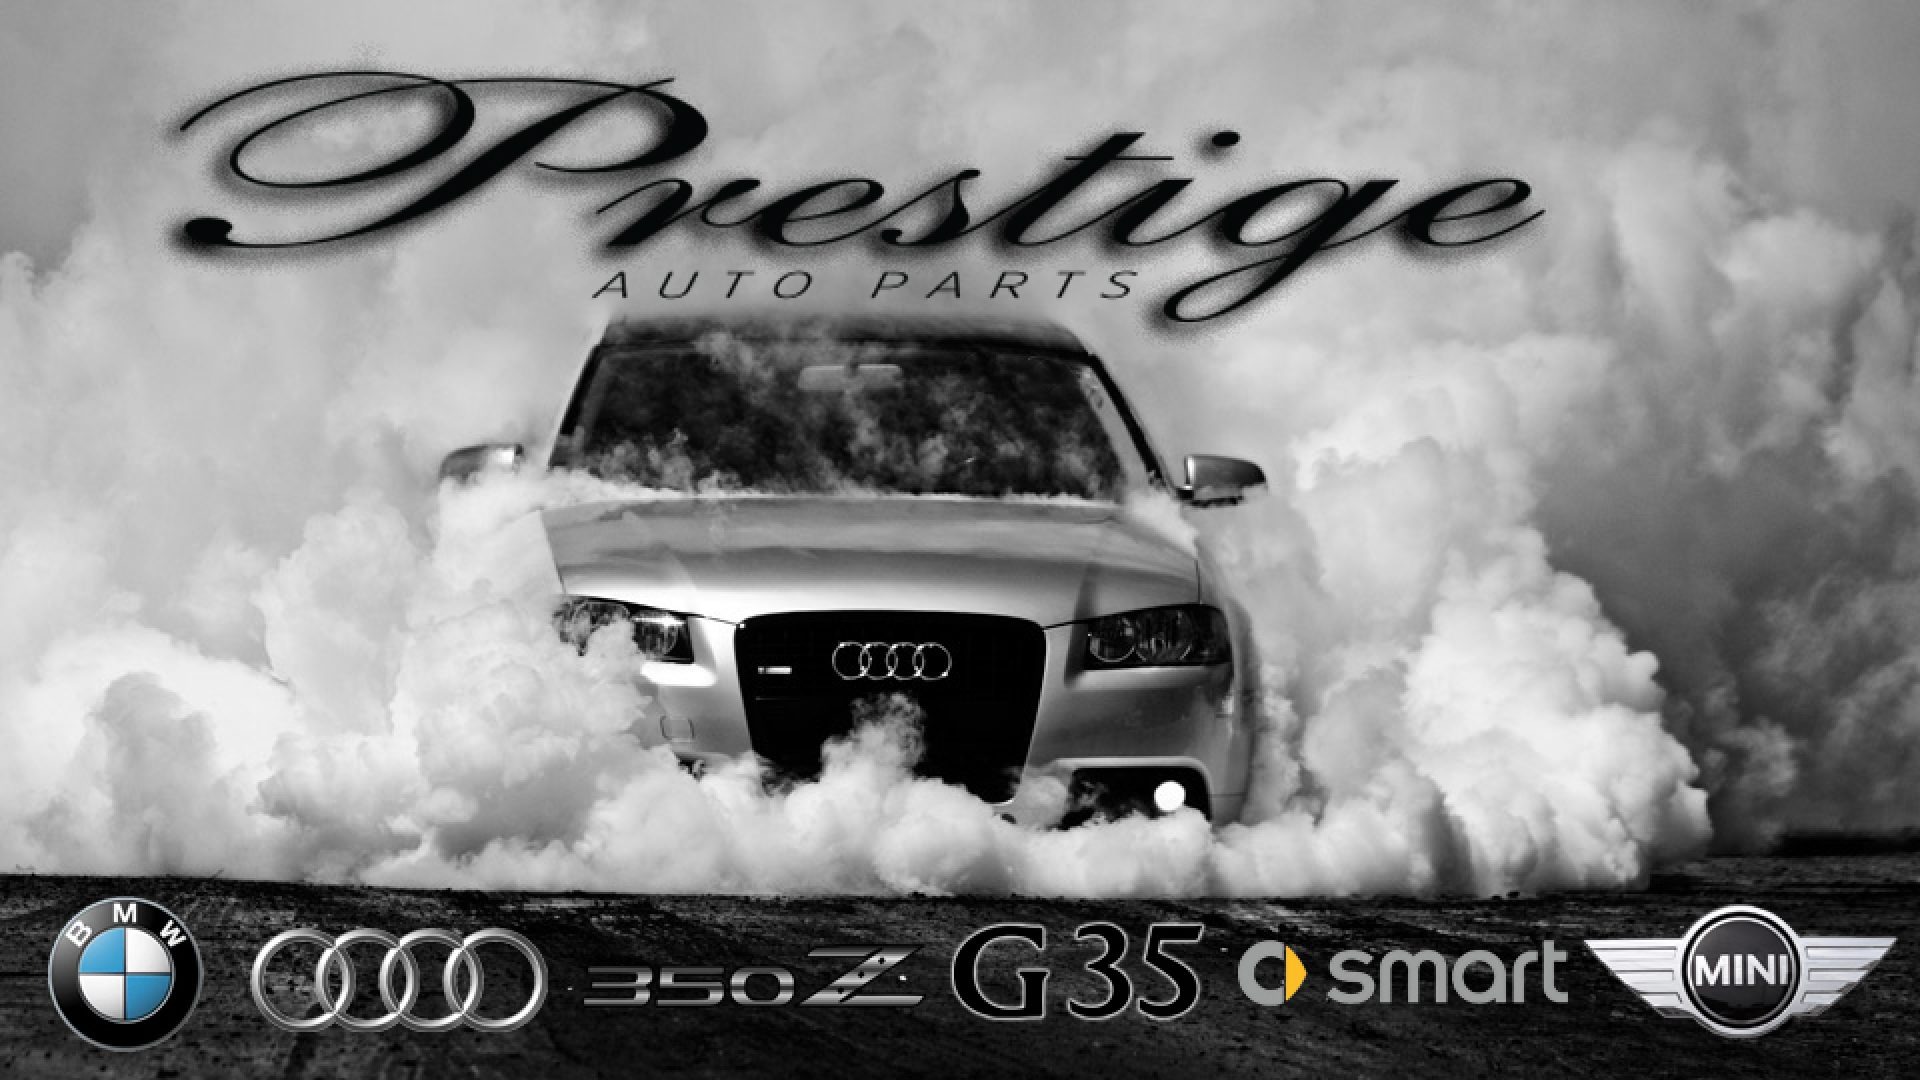 Prestige Auto Parts